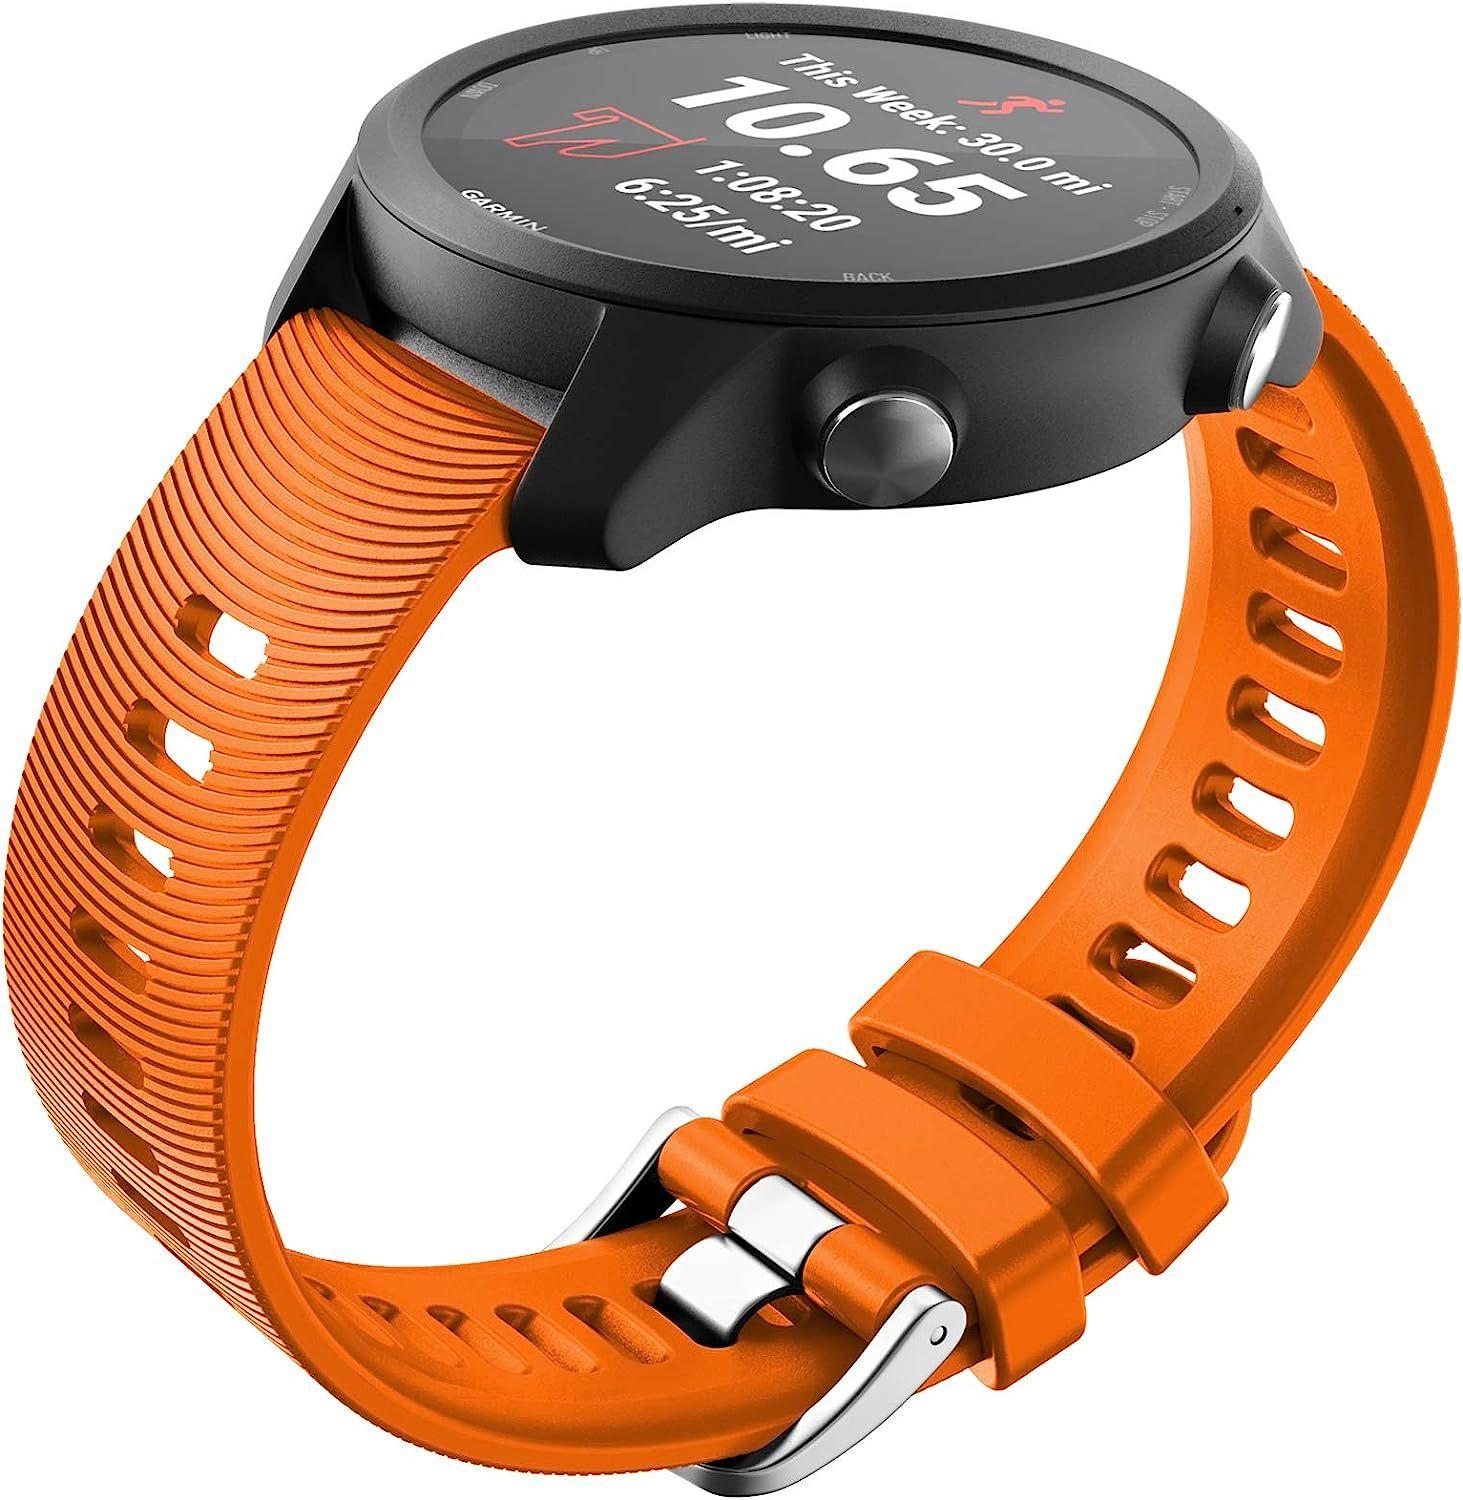 Montre de sport bracelet en silicone pour Garmin Vivoactive 3 bracelet de  montre pour Garmin